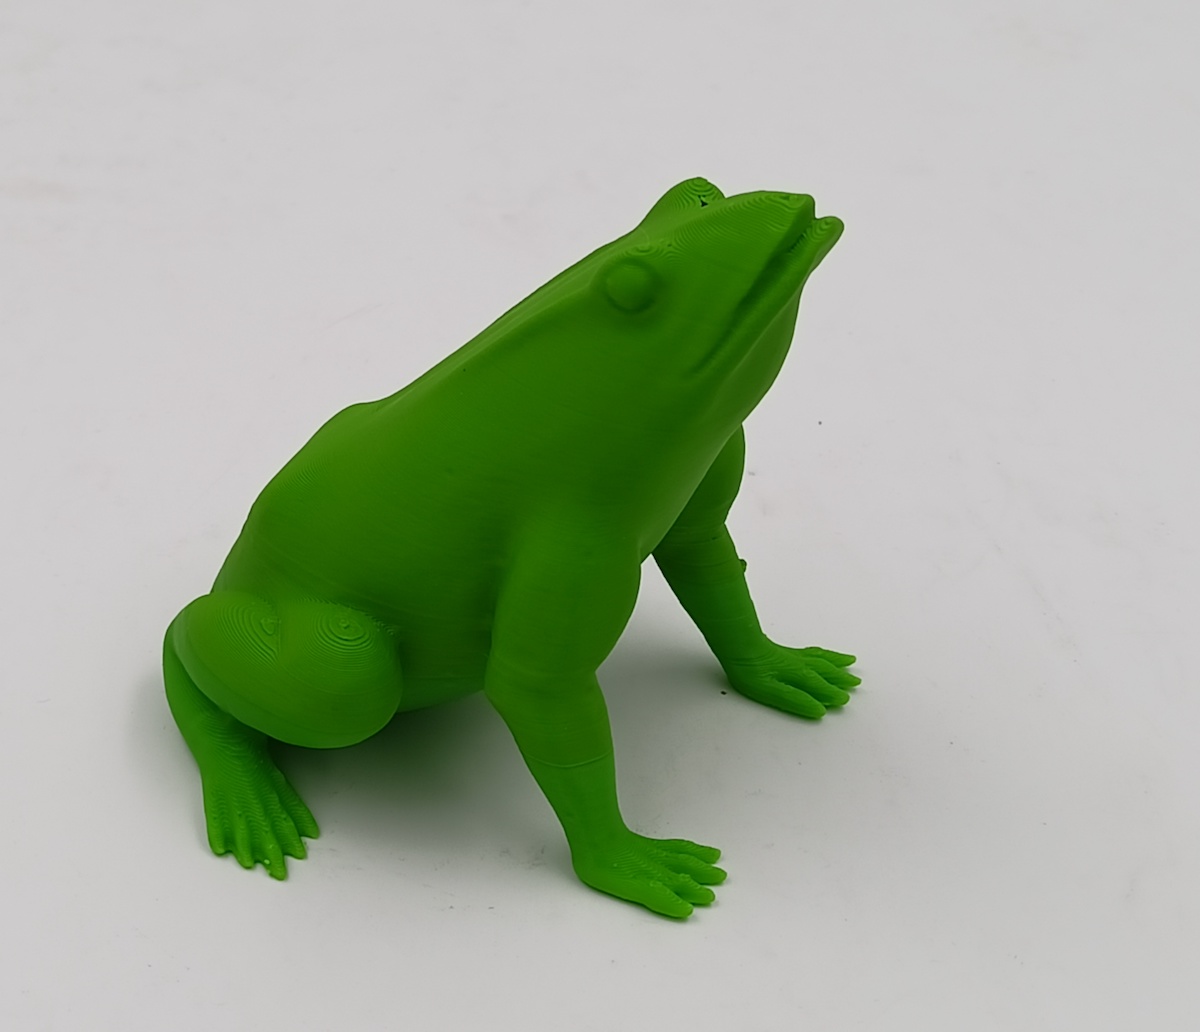 Imprimante3dfrance - Imprimante 3D France - 3DFilTech PLA Vert clair 1.75mm  0.5kg - pour imprimante 3D